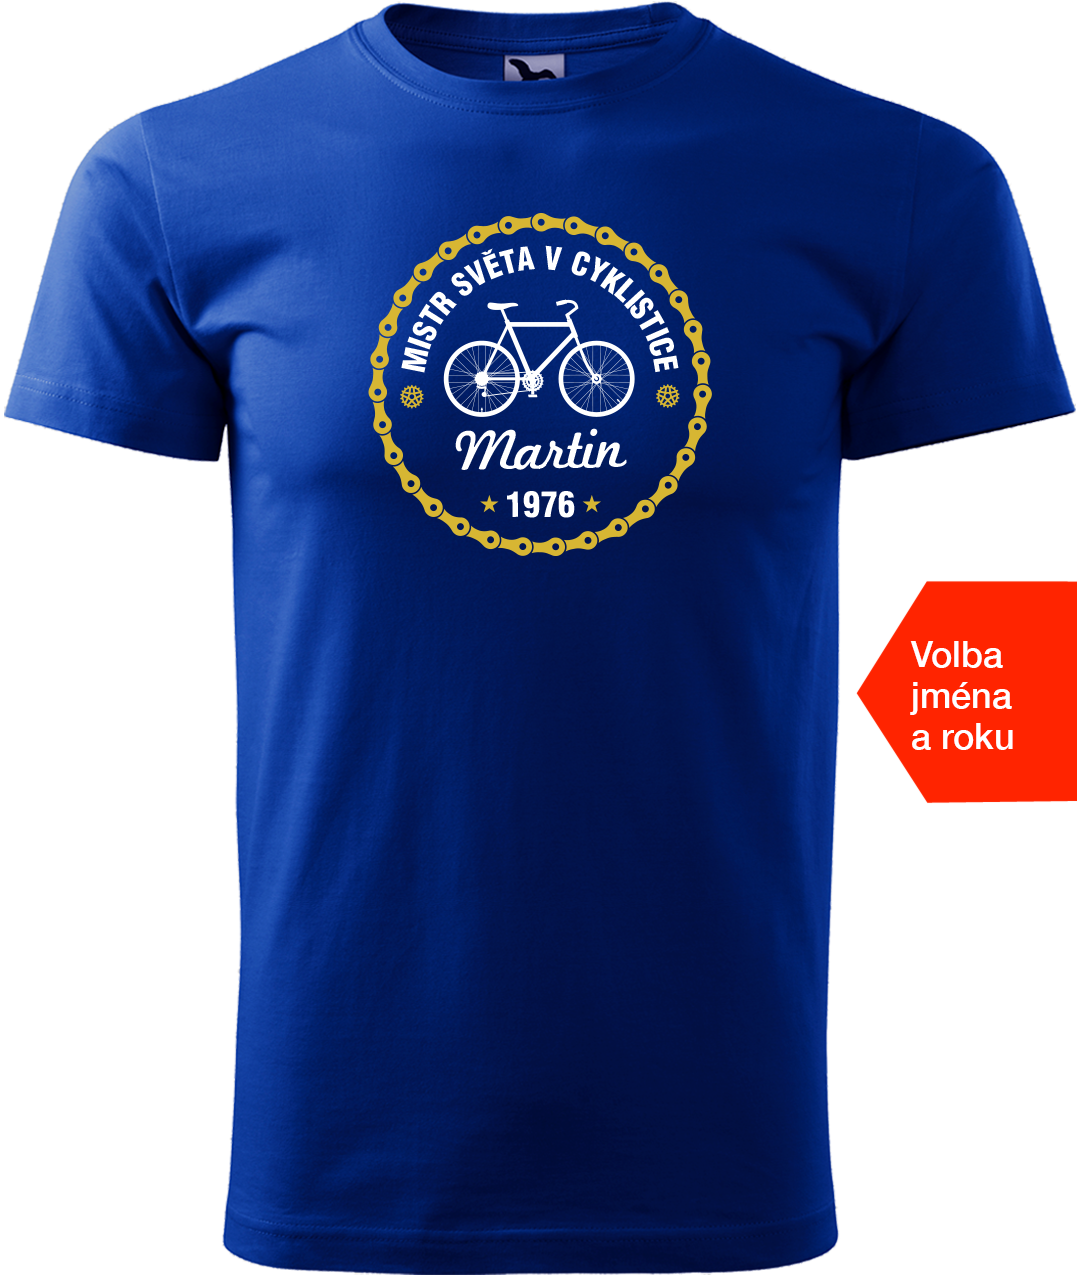 Pánské tričko pro cyklistu se jménem a rokem - Mistr světa v cyklistice Velikost: L, Barva: Královská modrá (05)